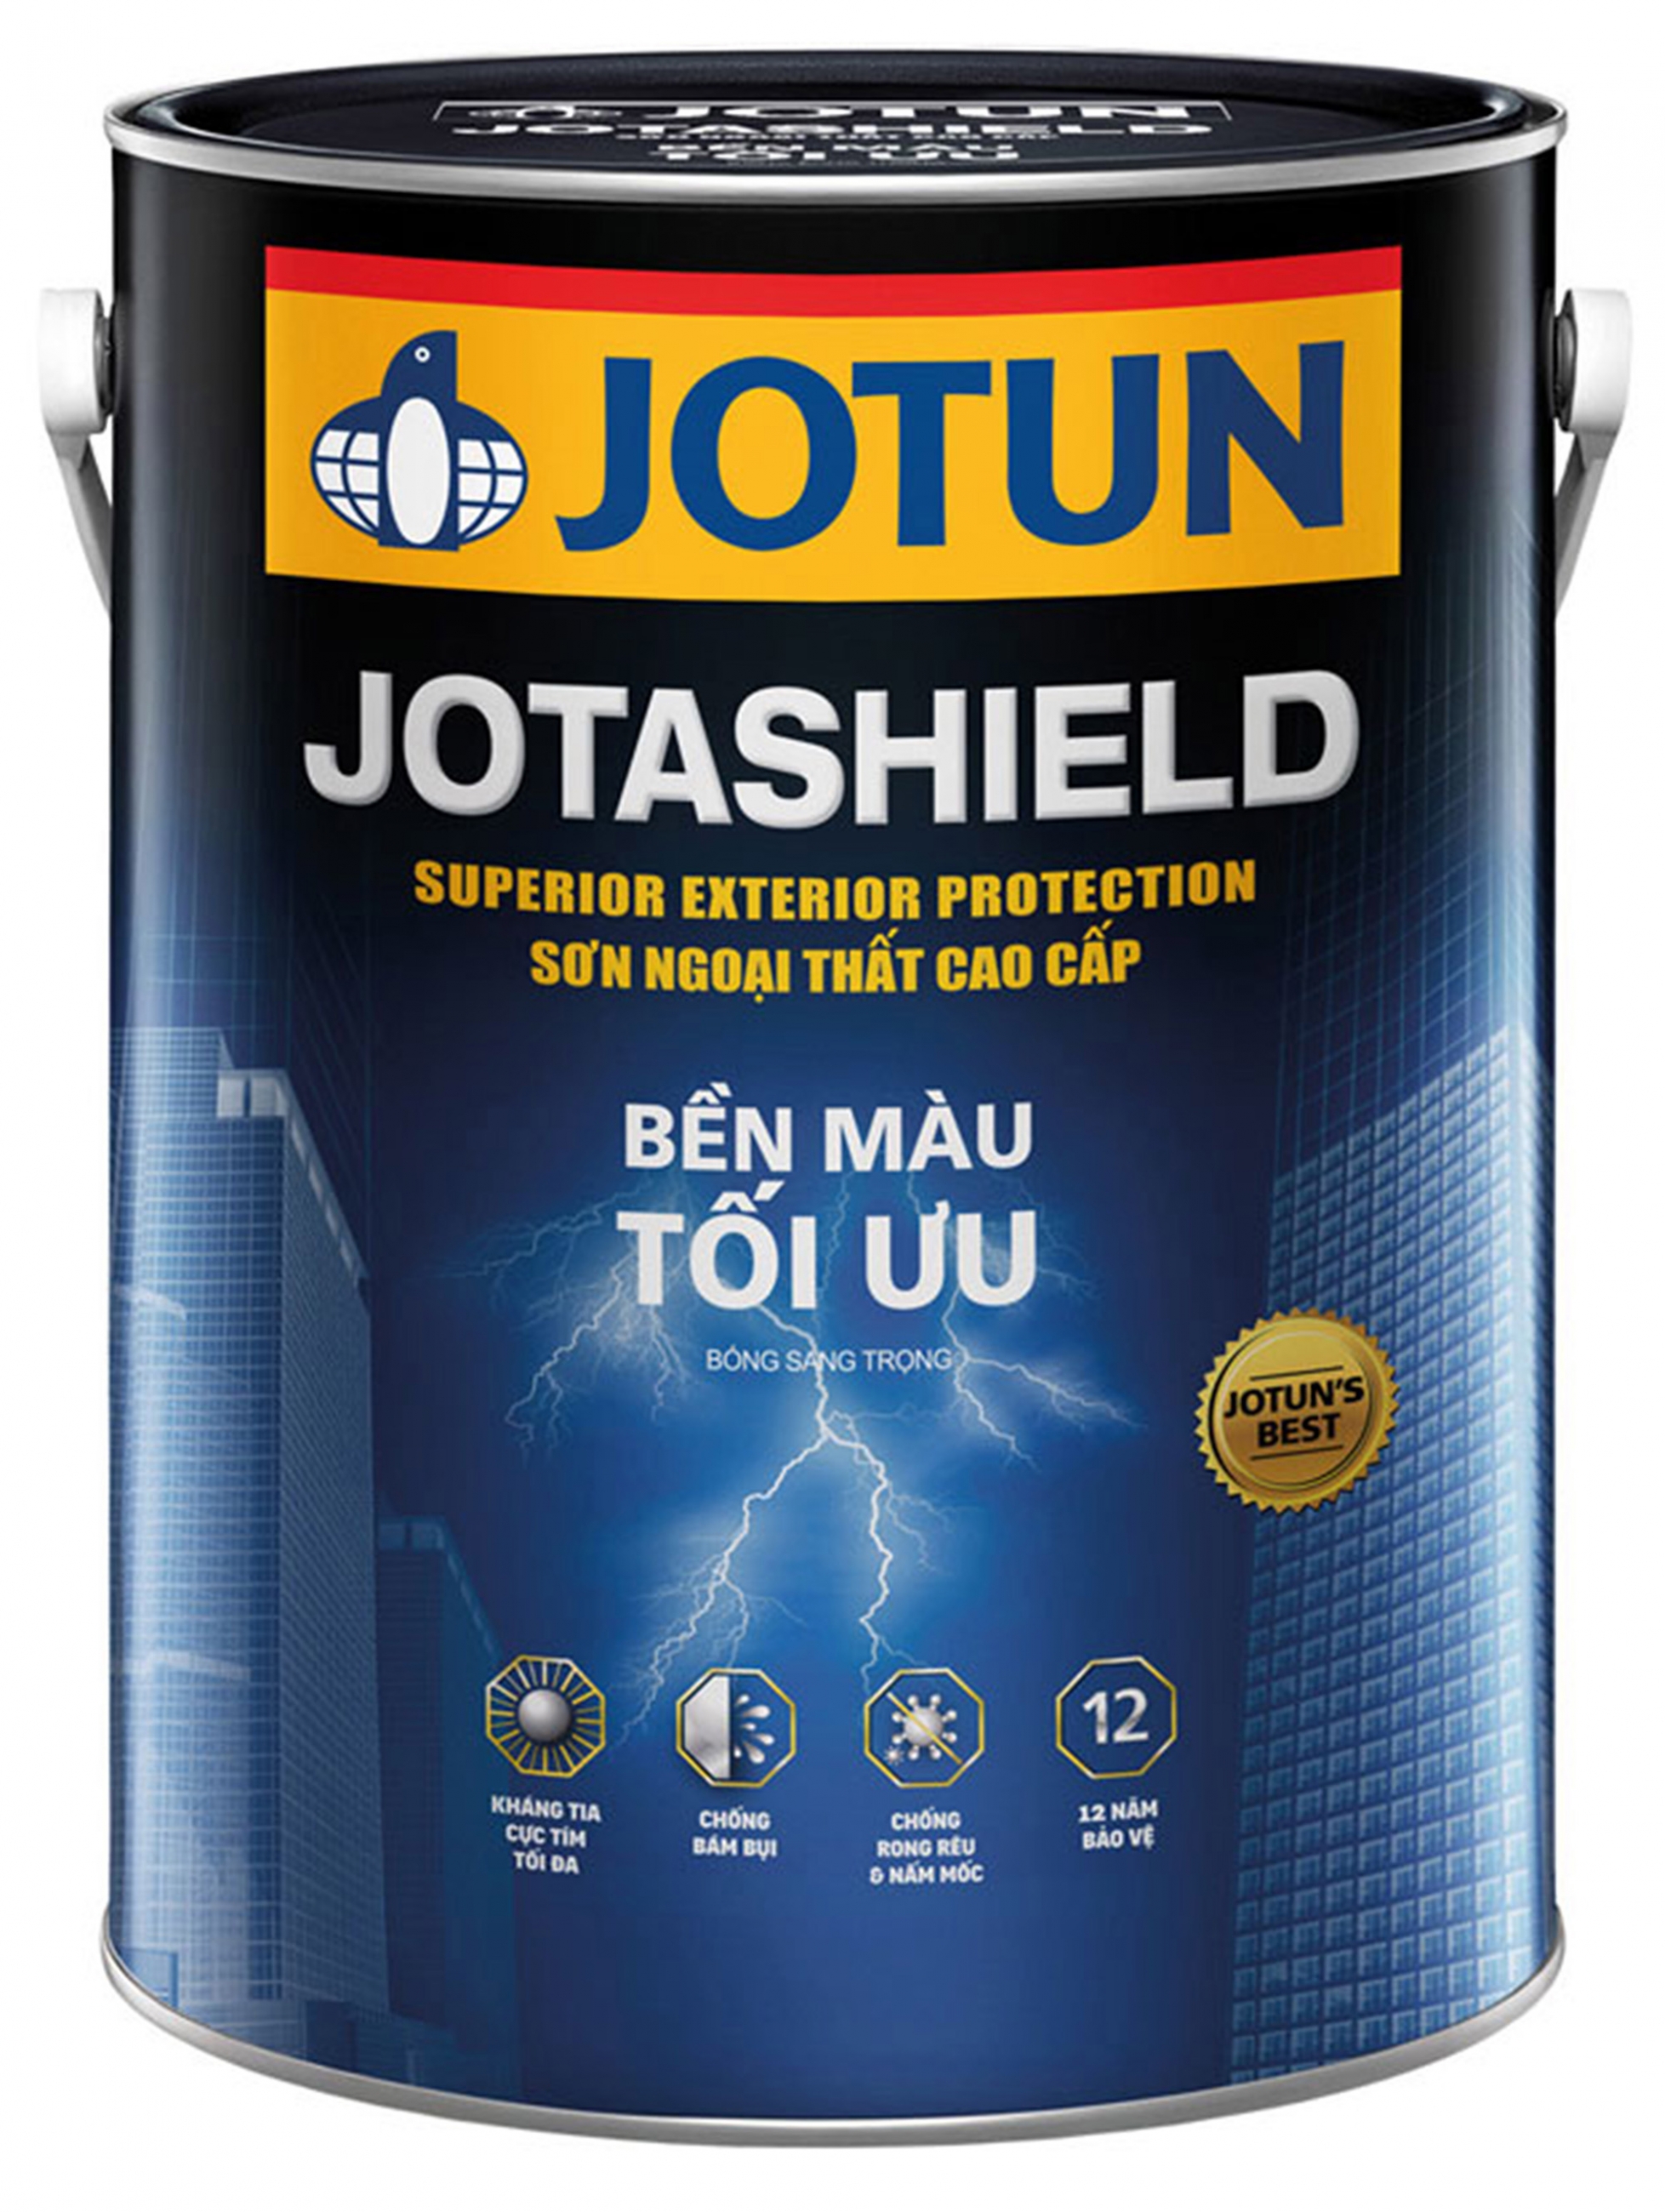 Khách hàng đánh giá sơn Jotun là một trong những sản phẩm sơn chất lượng cao nhất. Với độ che phủ mạnh mẽ cùng độ bền cao, Jotun sẽ là sự lựa chọn tuyệt vời cho ngôi nhà của bạn.